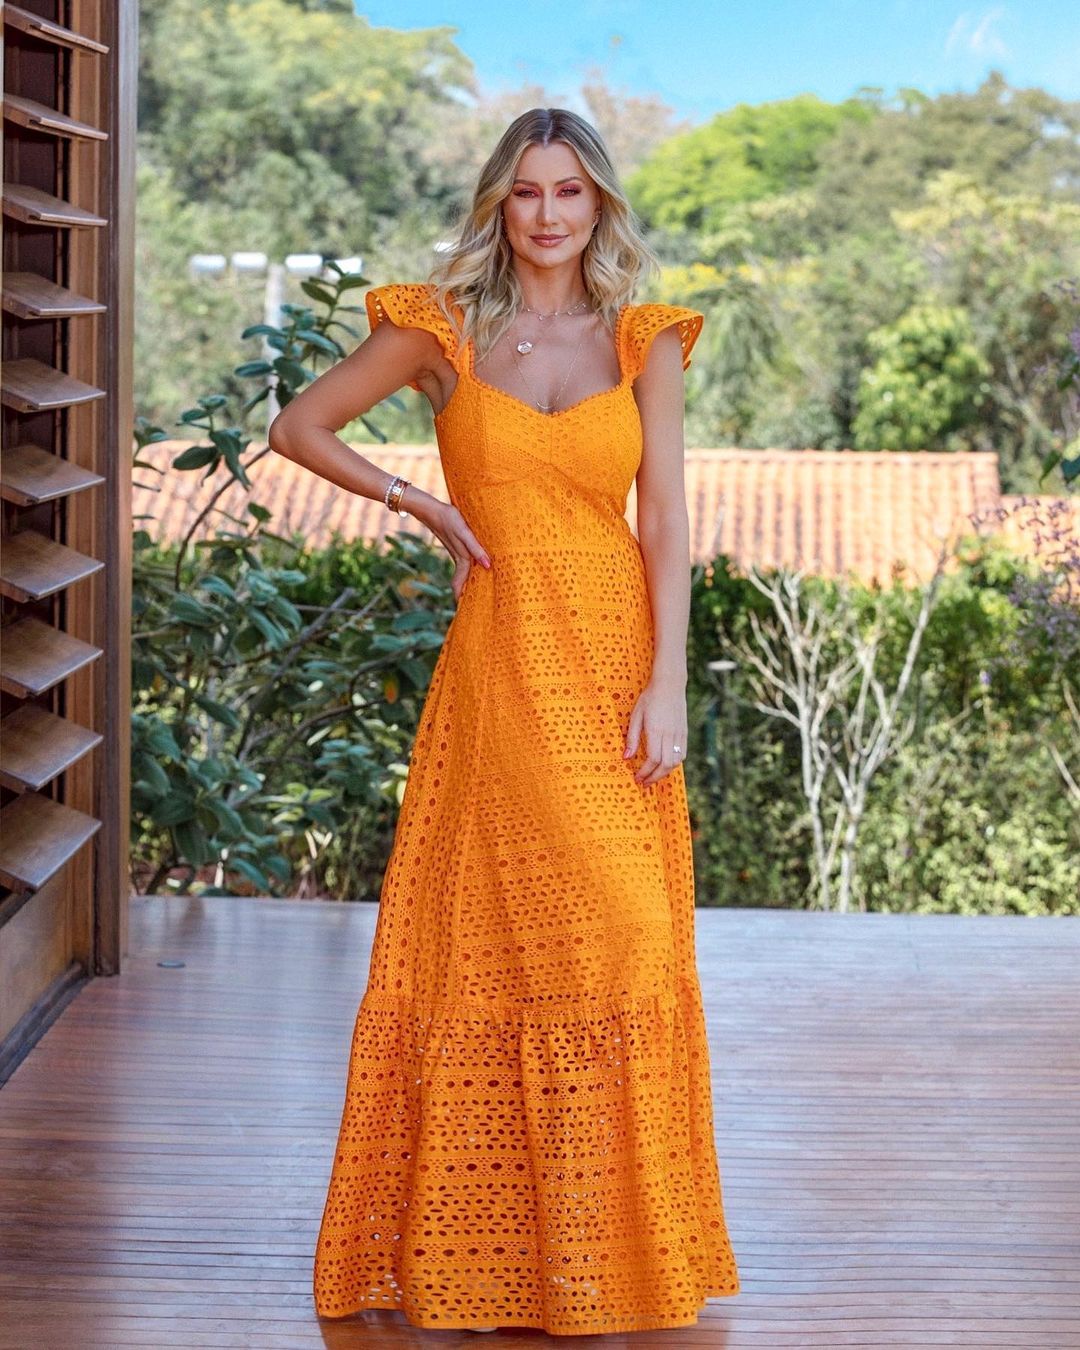 aim good Kangaroo Vestido longo de verão: 10 opções para comprar + 15 looks incríveis